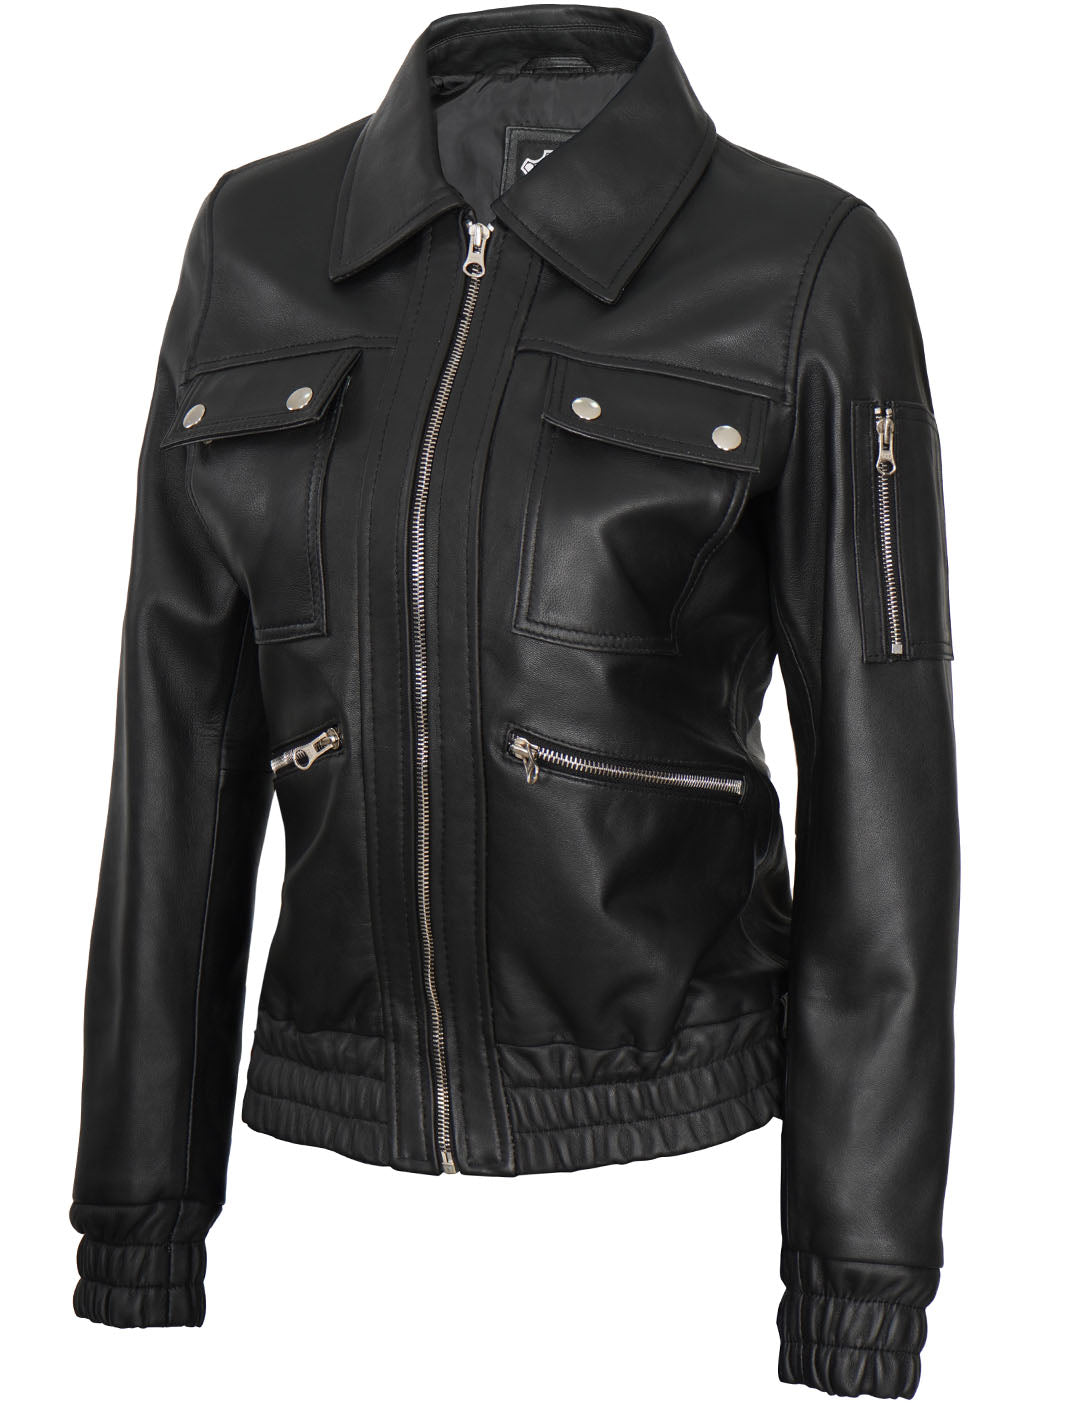 Womens Black Bomber Leather Jacket